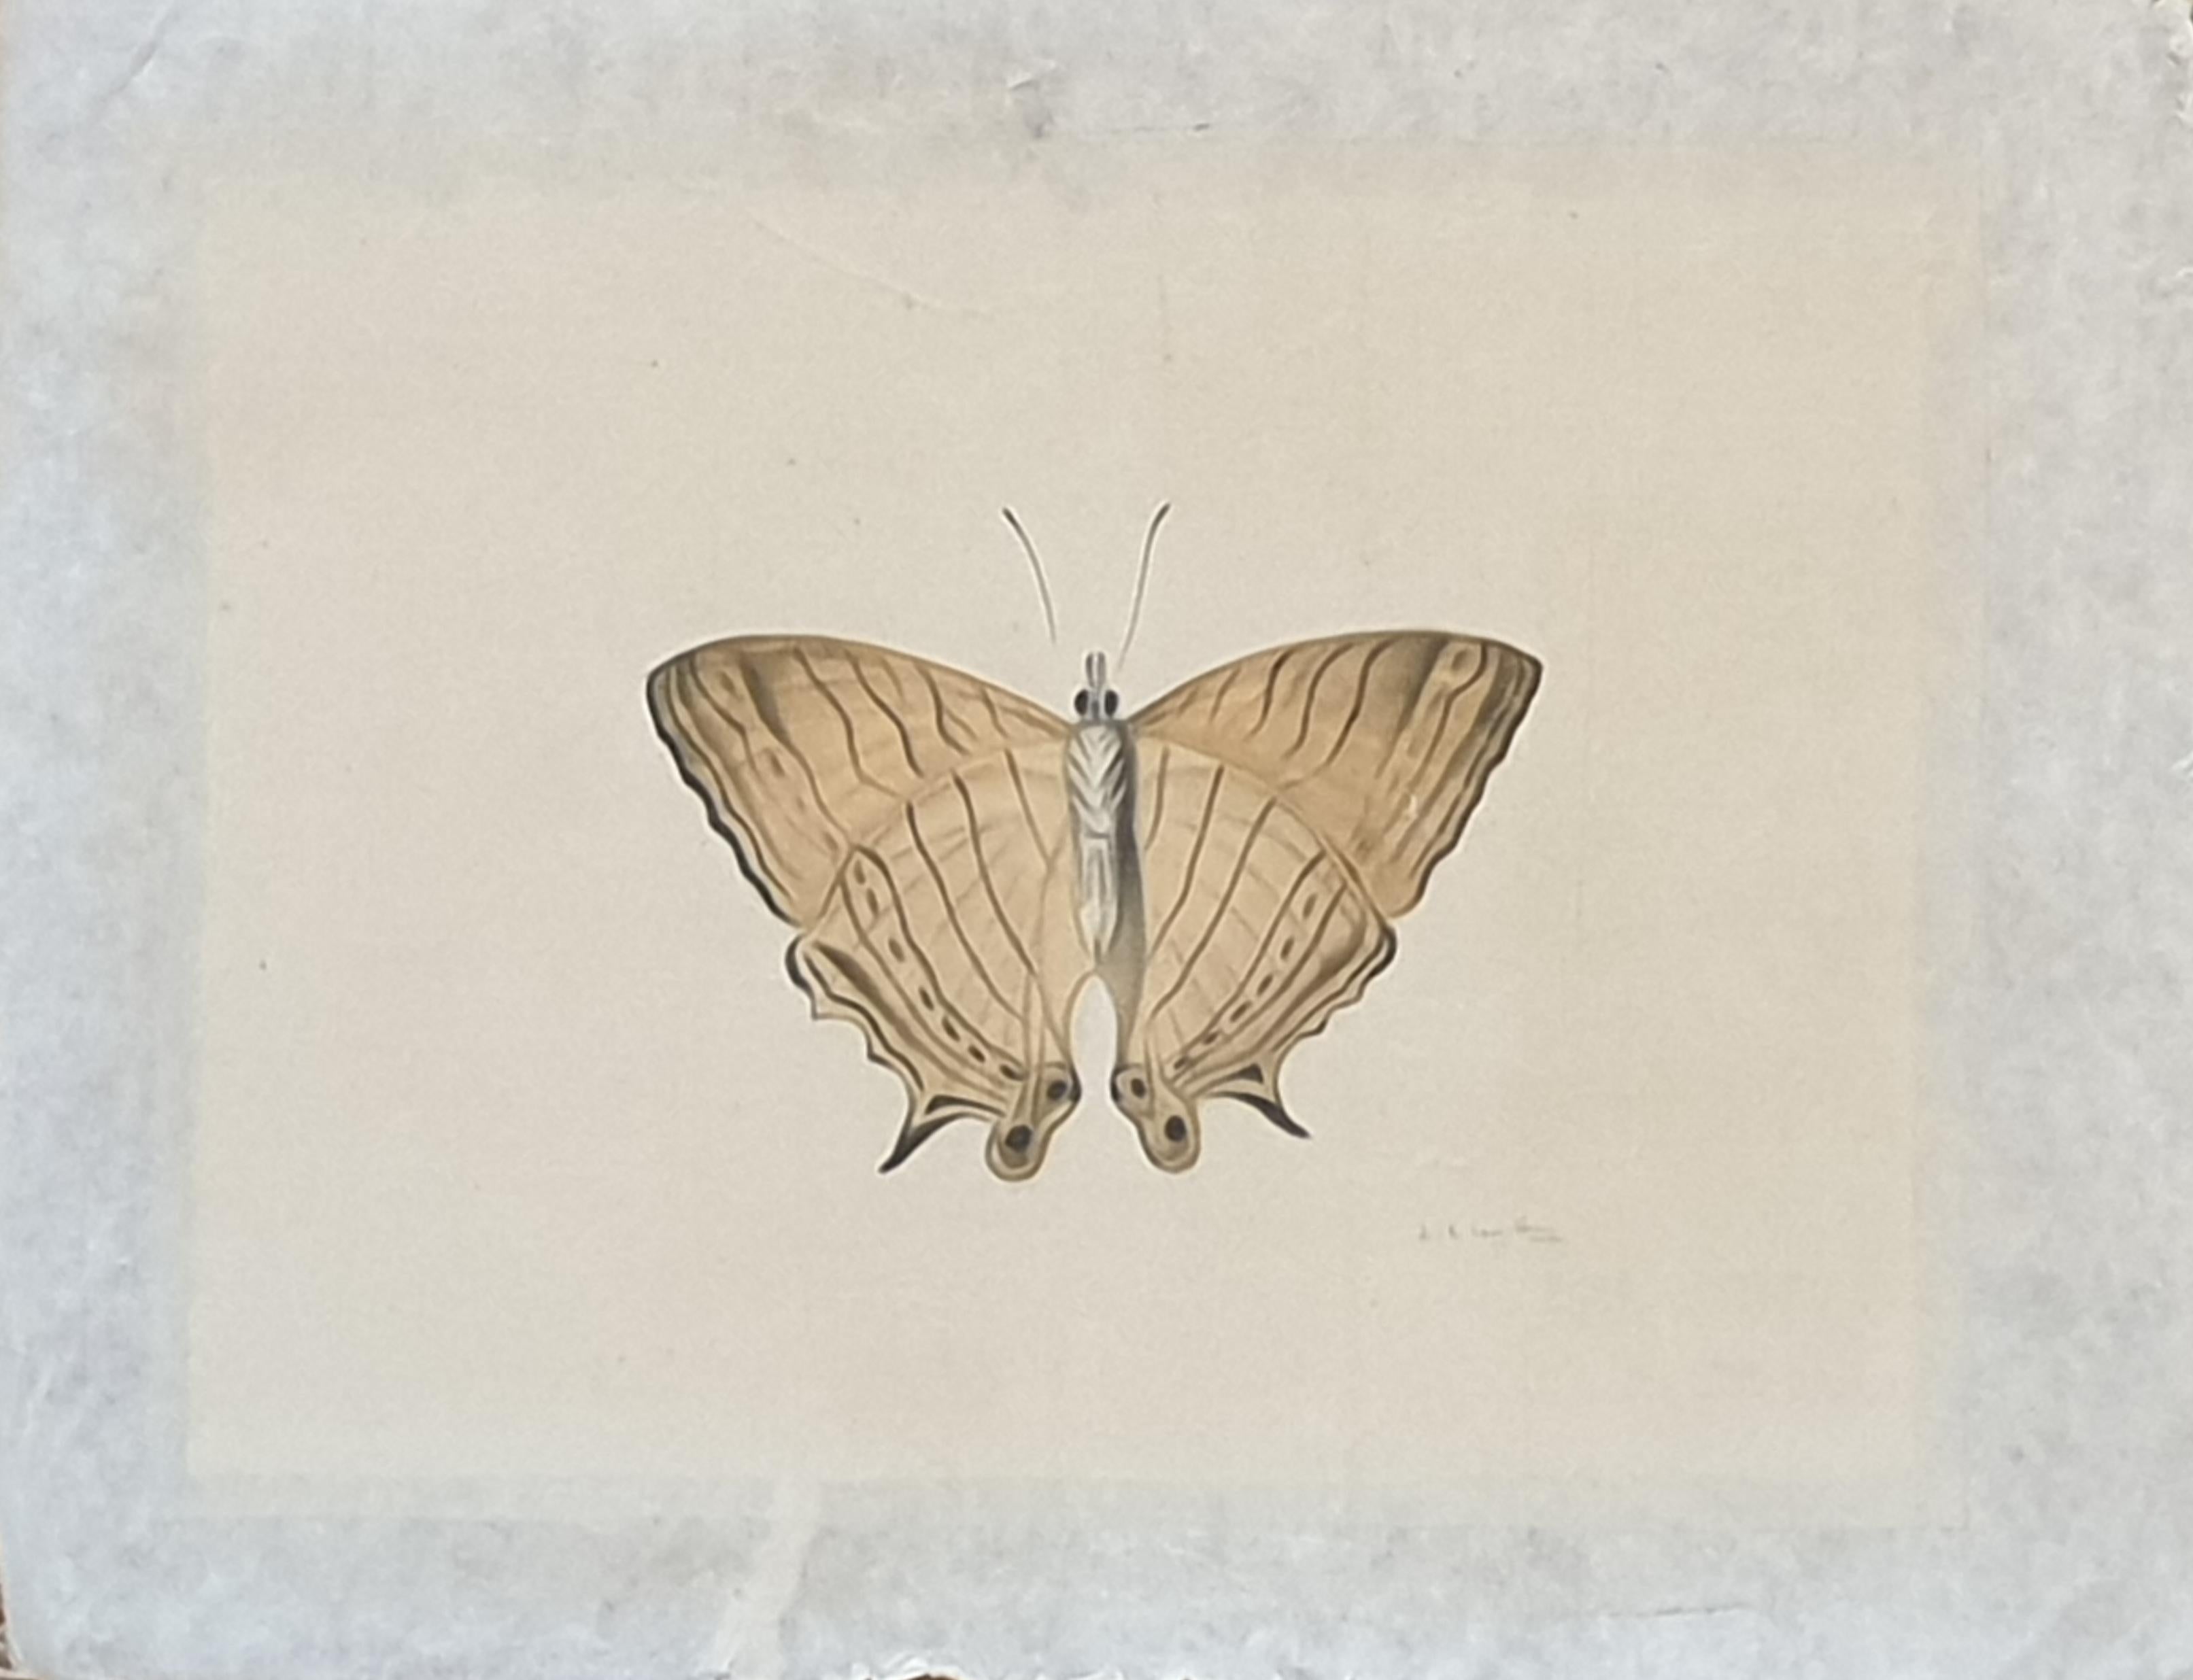 Étude d'un papillon, aquarelle sur soie appliquée sur papier fait main. 